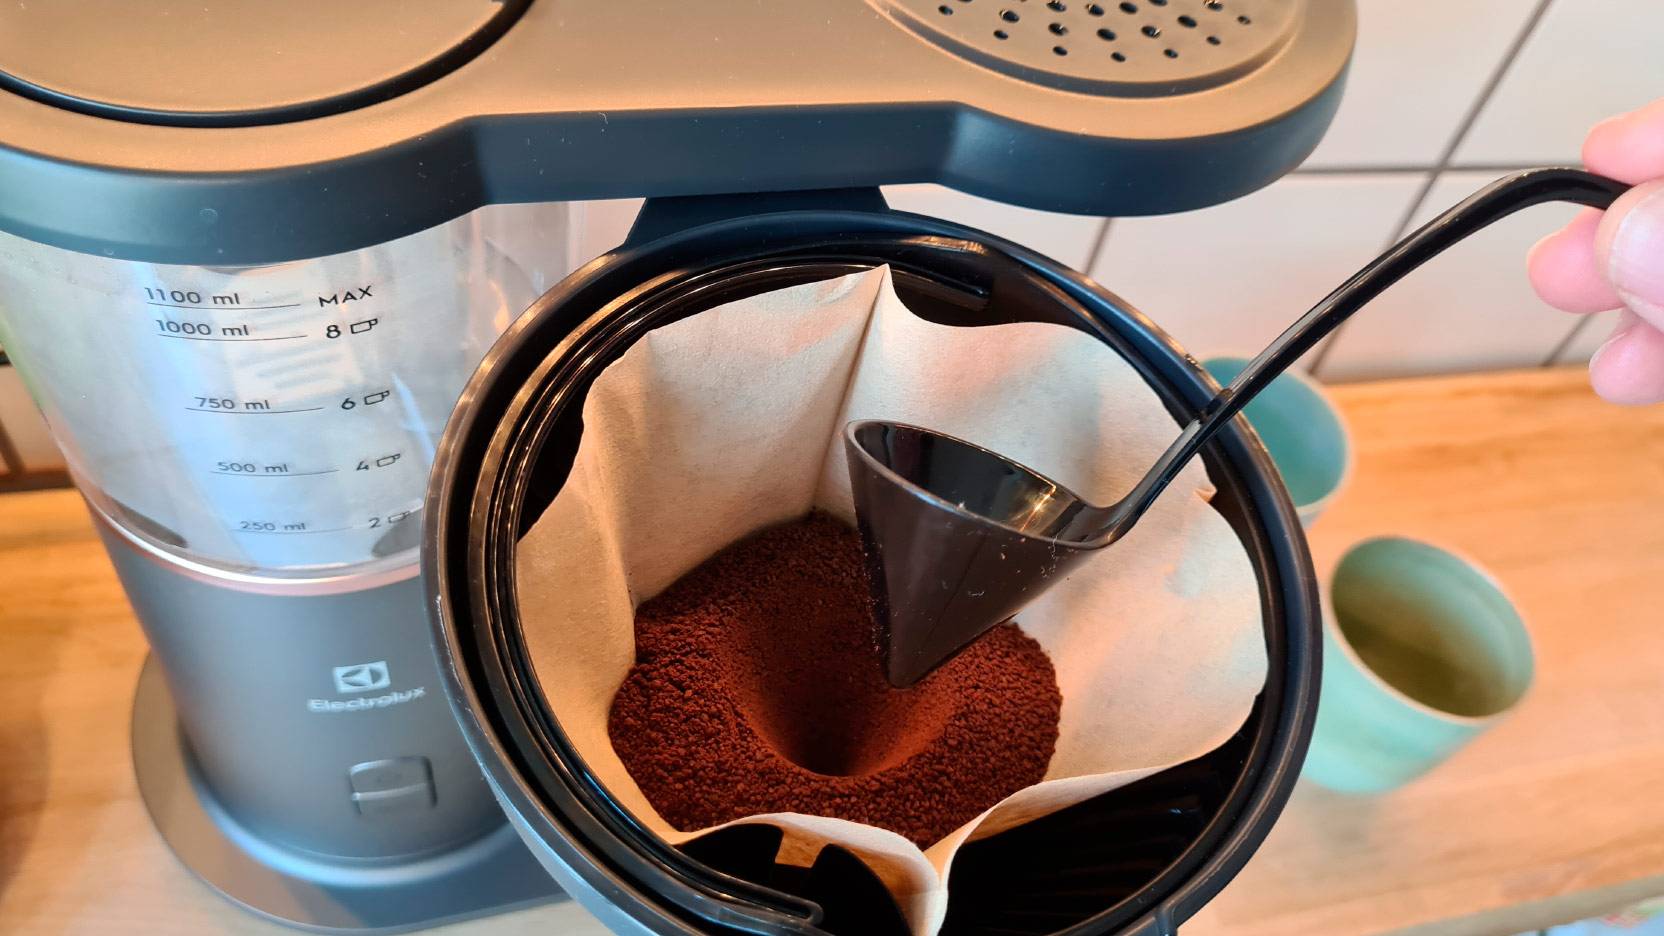 Billede af aroma-skeen, der laver en fordybning i kaffen i filteret på Electrolux Explore 7 kaffemaskinen